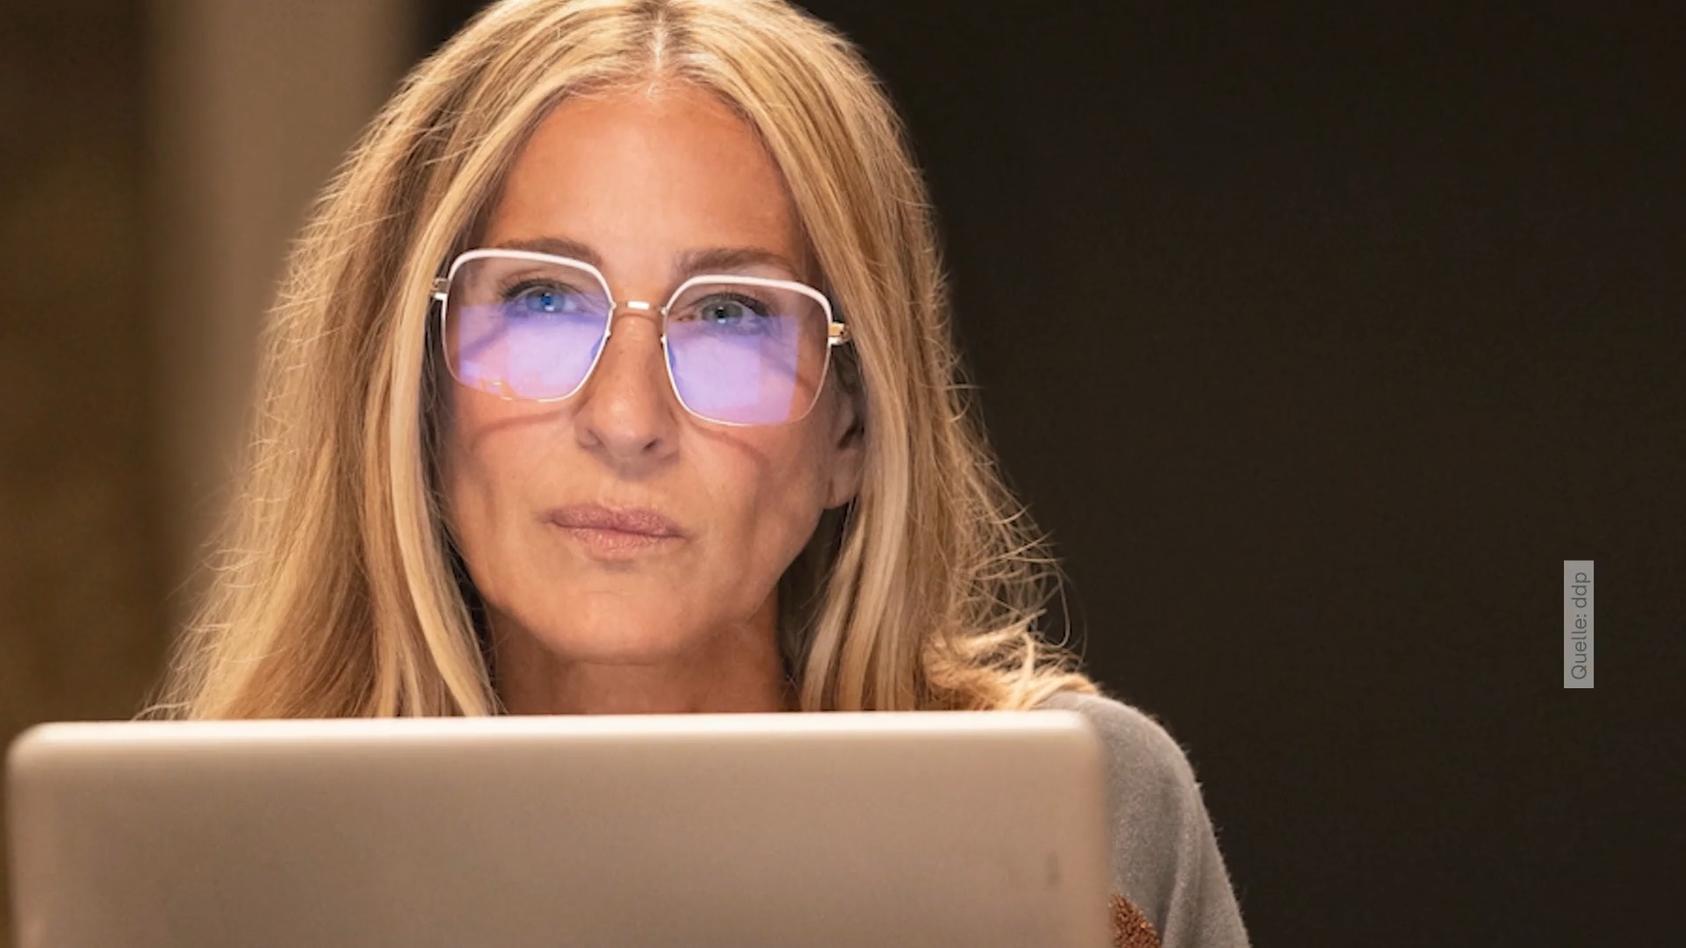 Durchblick a la Carrie Bradshaw Die Brillen-Trends 2022